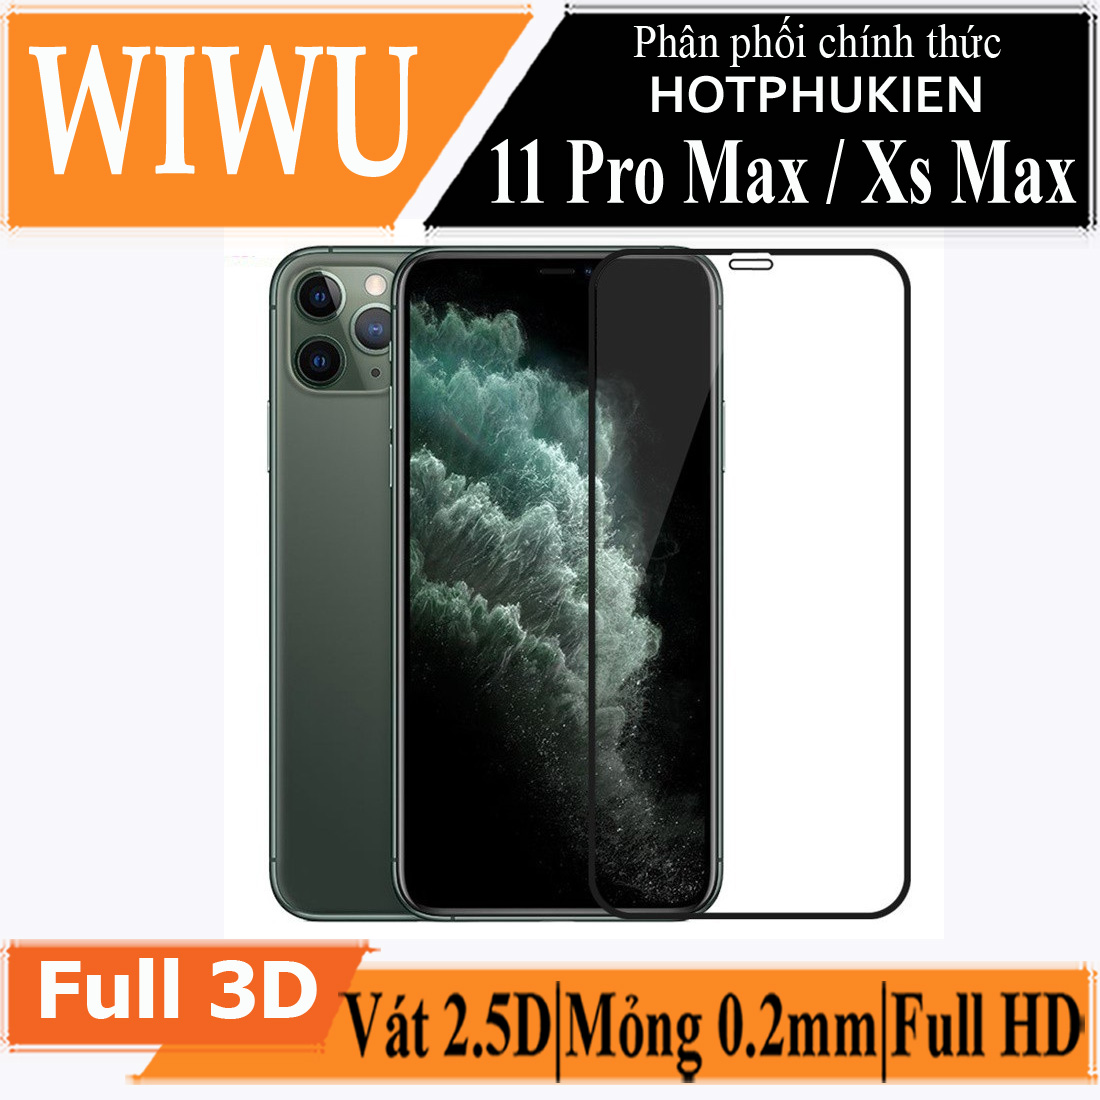 Miếng dán kính cường lực Cho iPhone Xs Max hiệu WIWU iVista